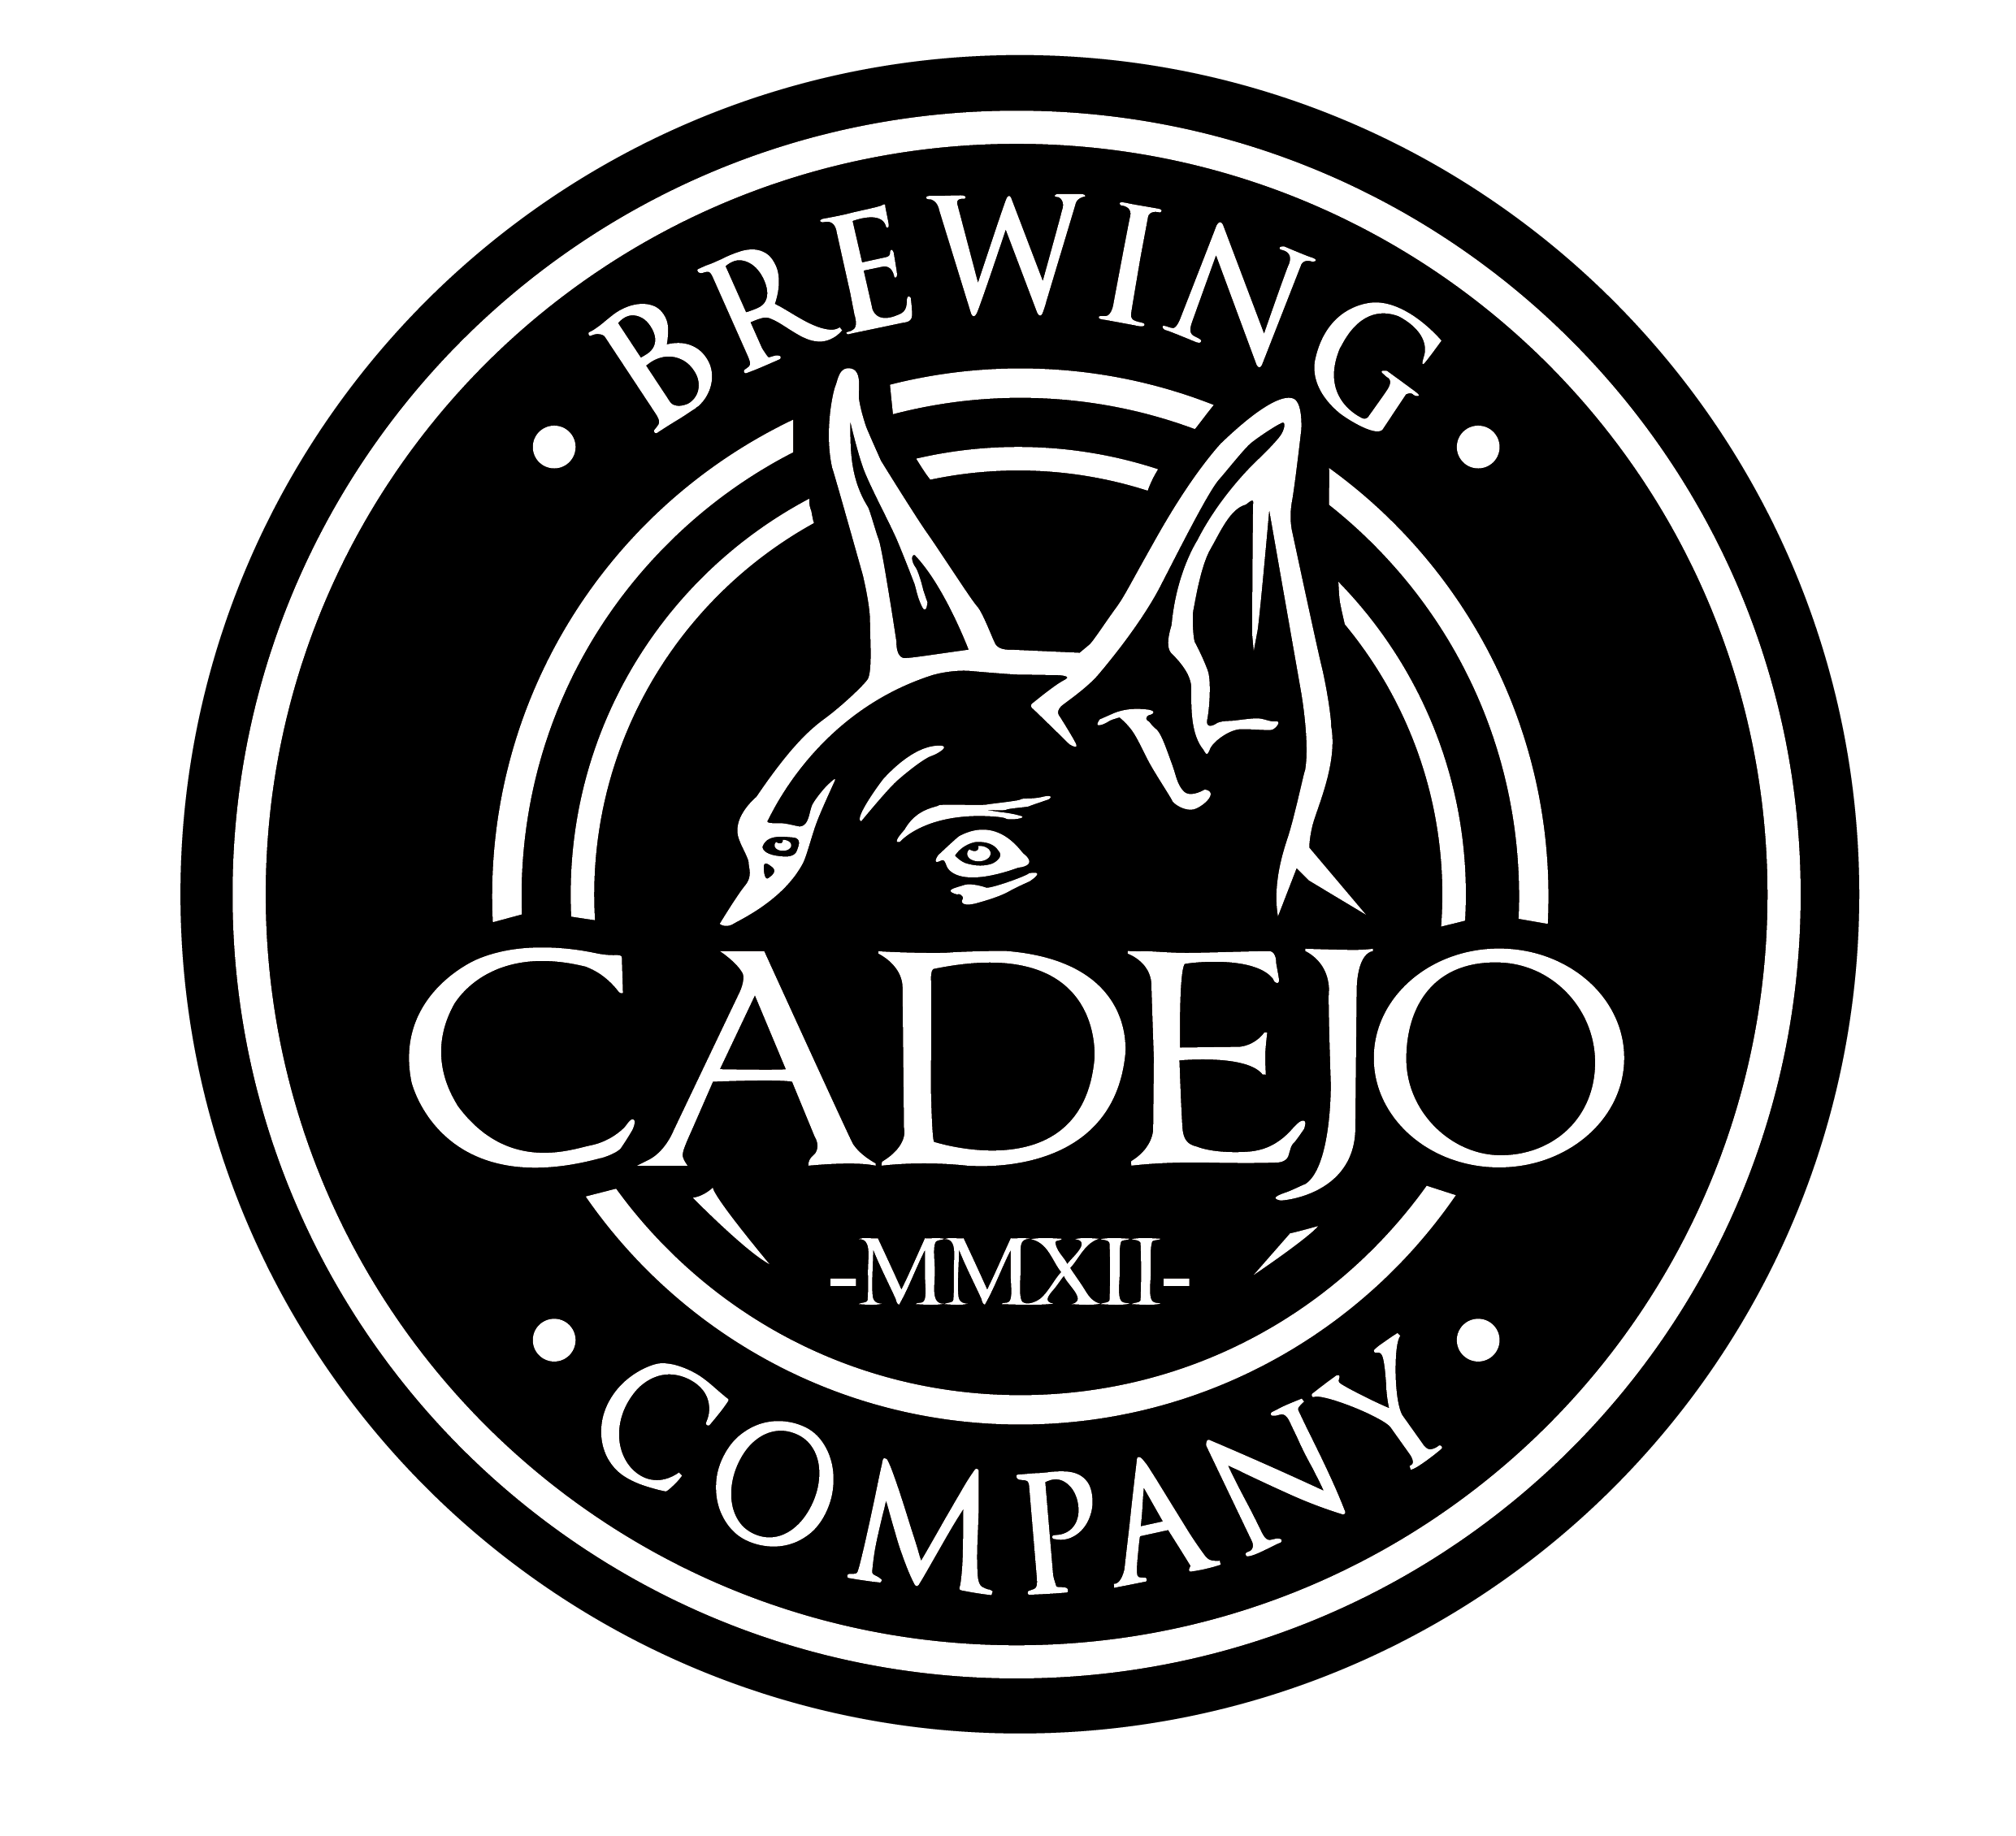 Cadejo Brewing Company